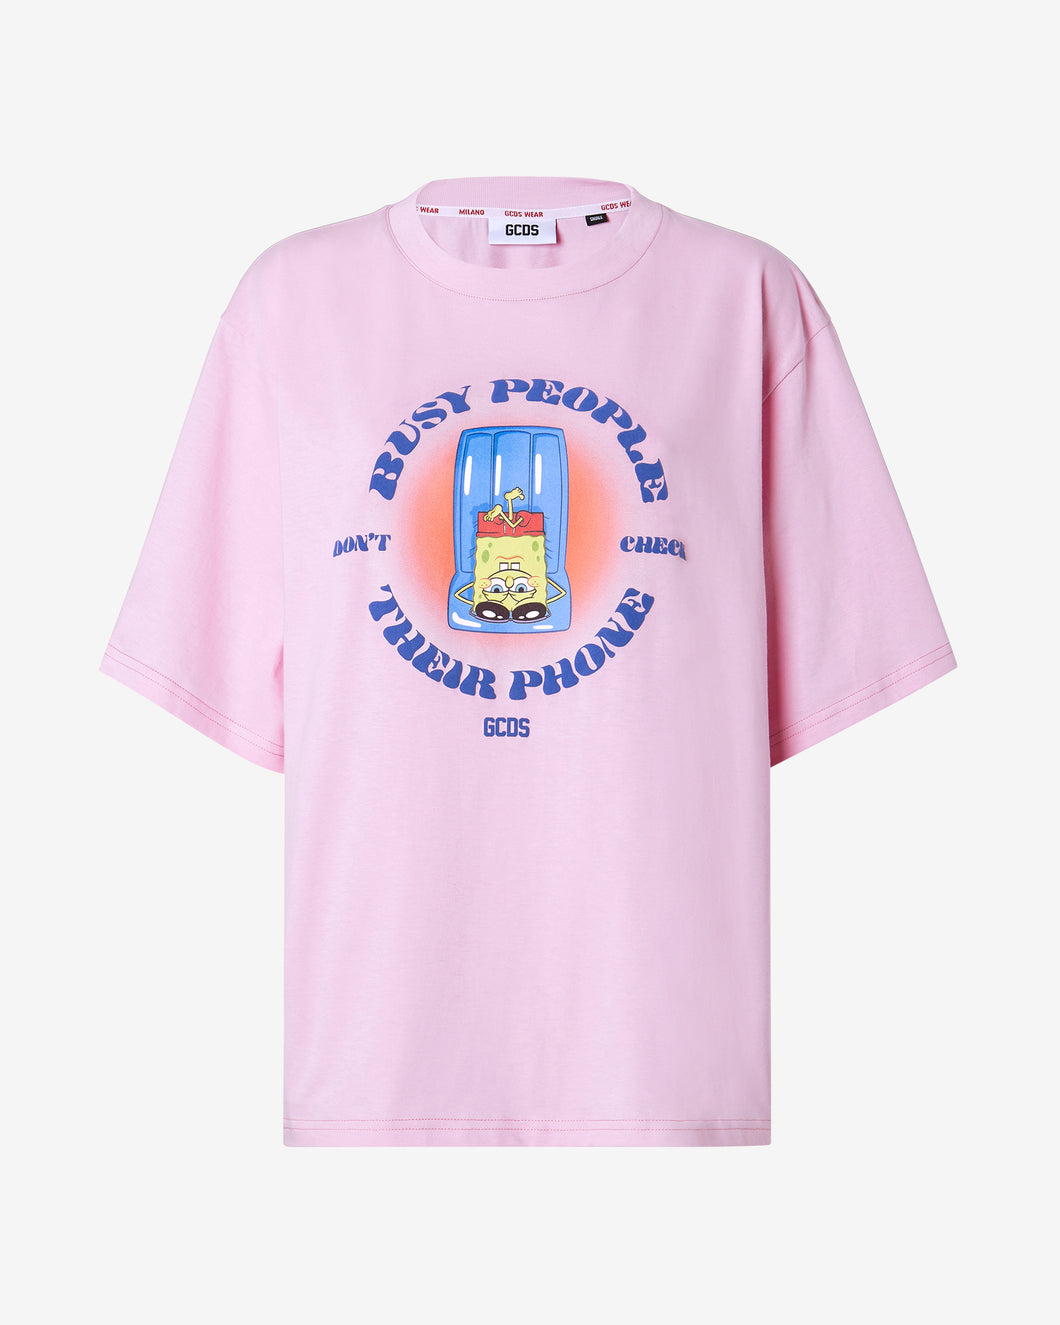 Spongebob Busy People T-shirt : Women T-shirts Pink | GCDS